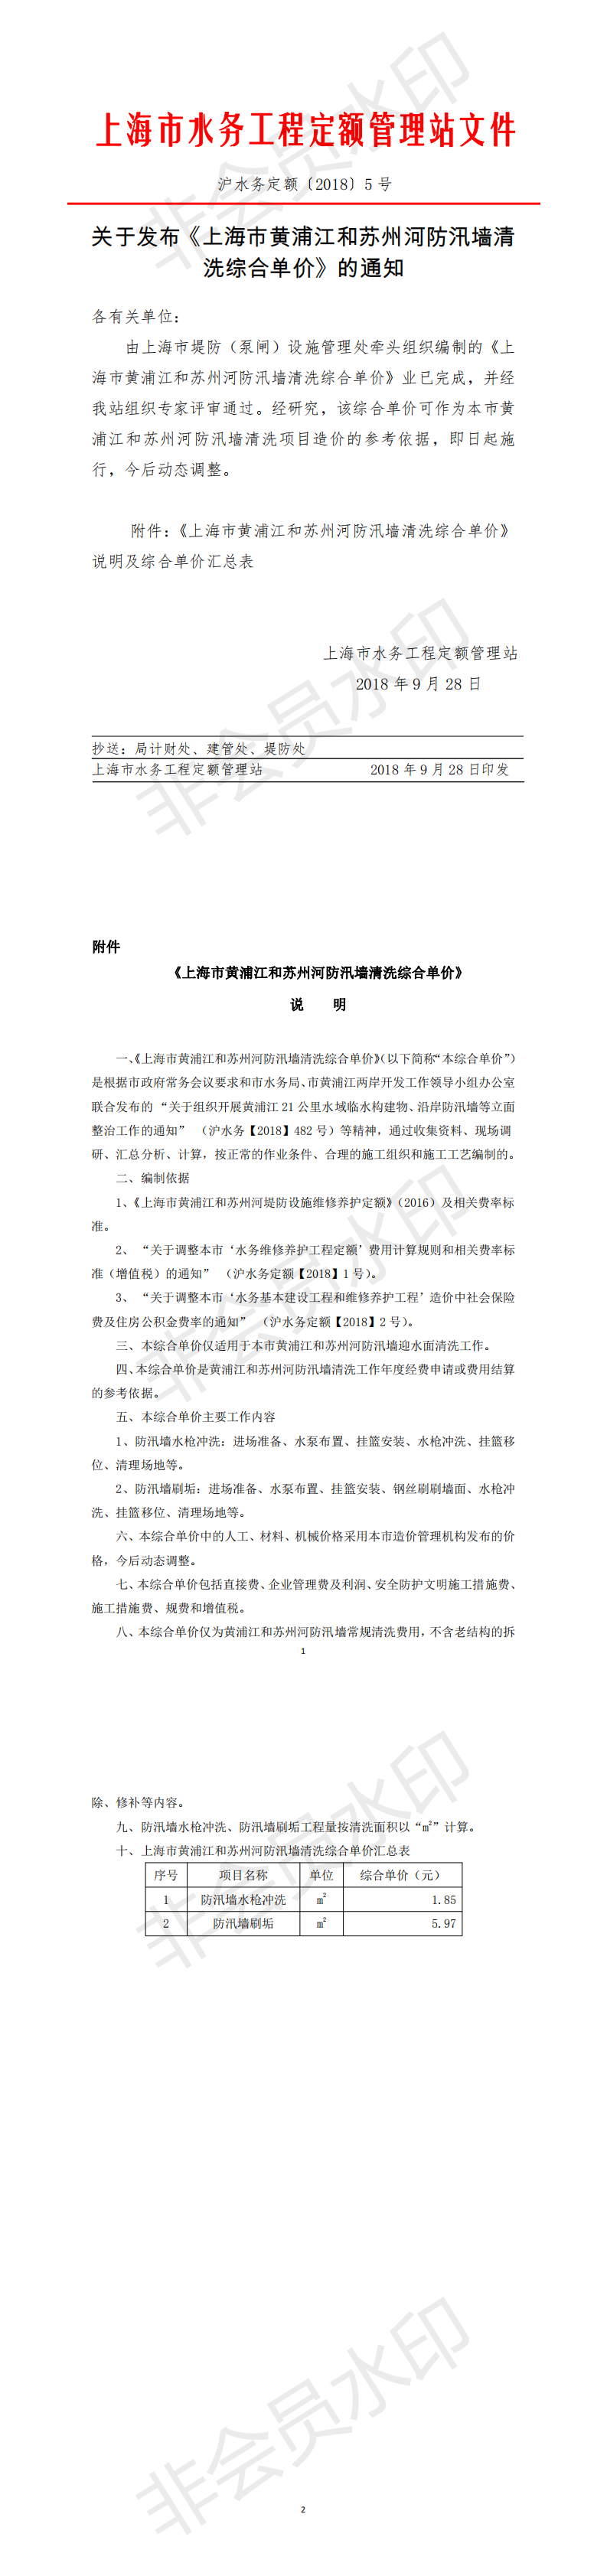 关于发布《上海市黄浦江和苏州河防汛墙清洗综合单价》的通知_0.png